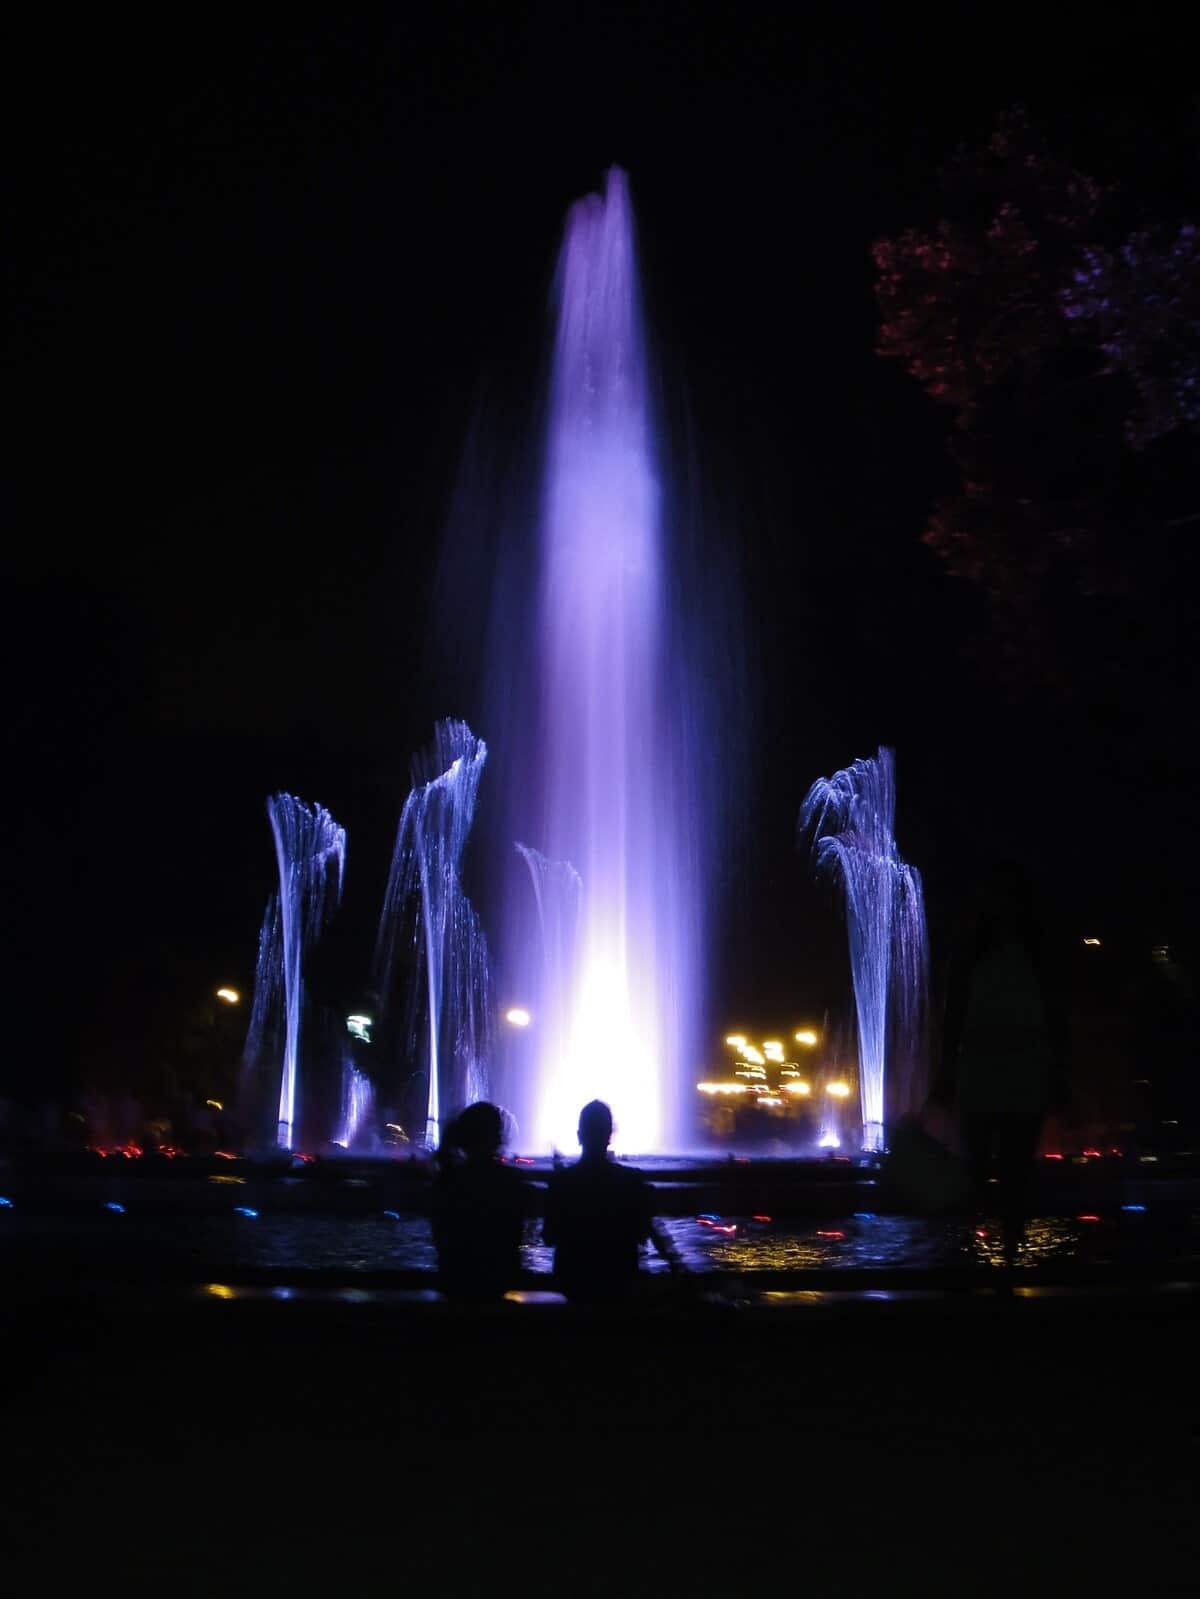 Spectacle de fontaines sur l'île Marguerite à Budapest dans notre article Visiter Budapest en Hongrie : Que faire à Budapest et que voir en 14 incontournables #budapest #hongrie #europe #voyage